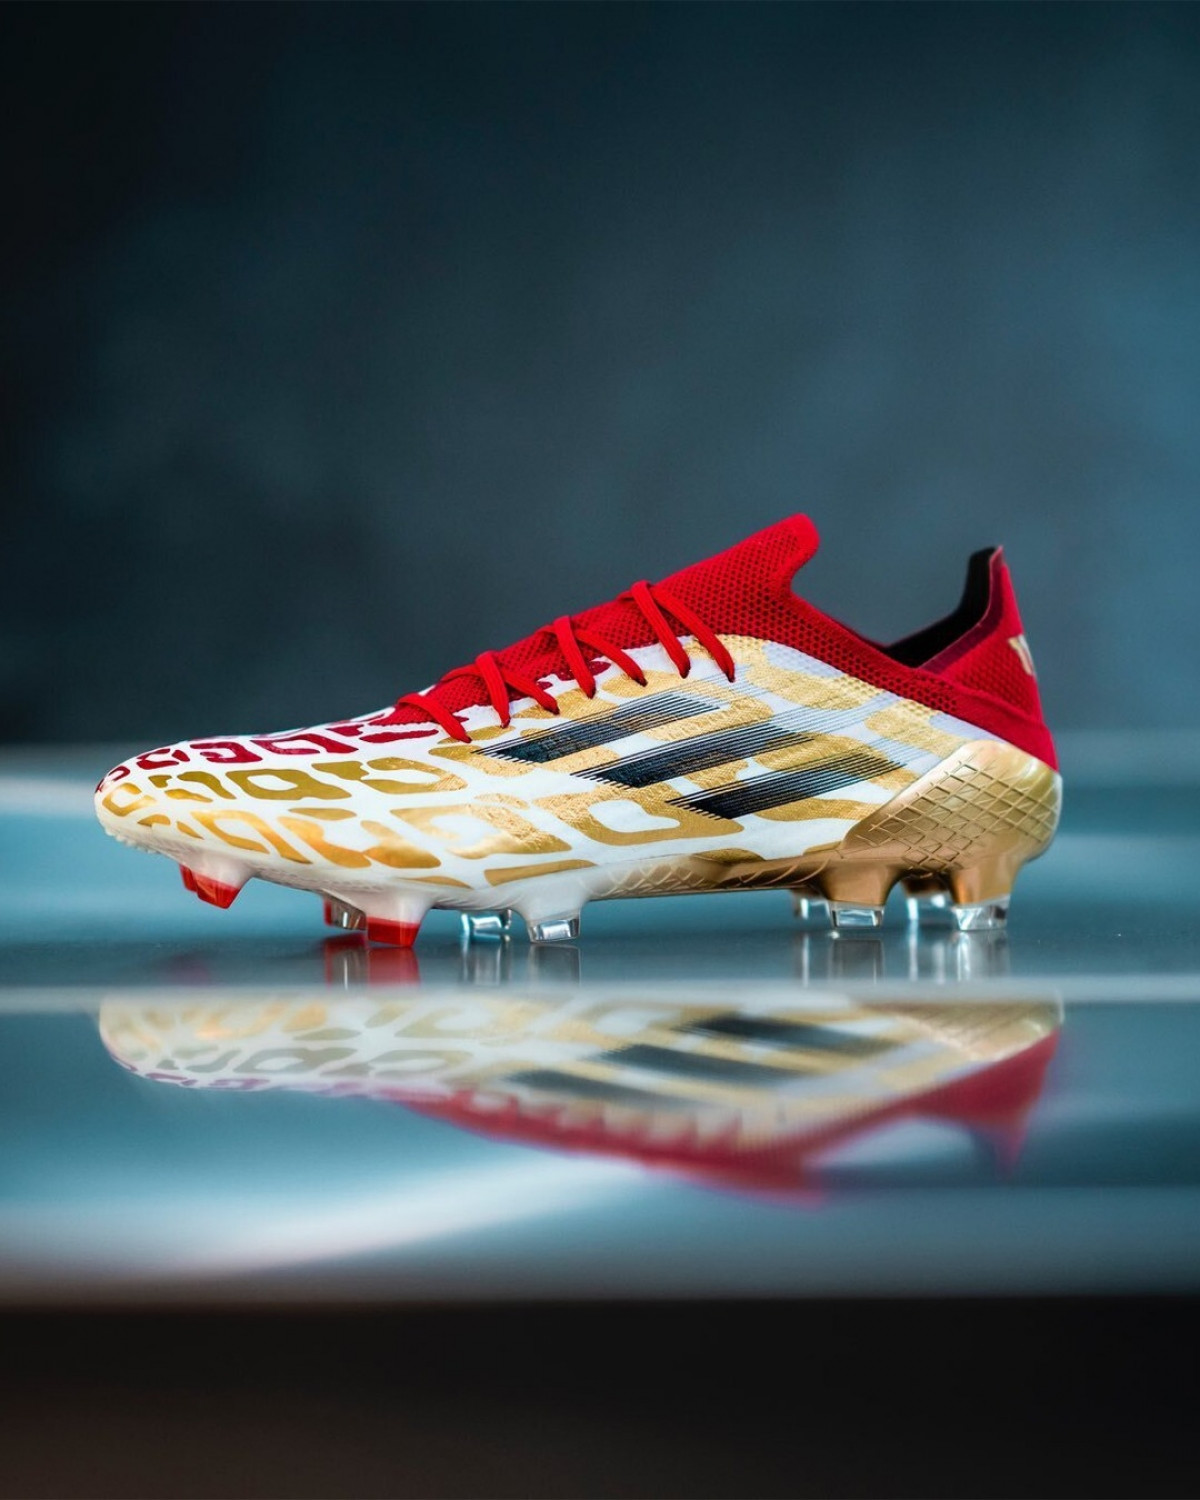 Mẫu giày mang 3 màu chủ đạo đỏ - trắng - vàng tượng trưng cho mục tiêu vô địch AFCON 2021 của Mohamed Salah và ĐT Ai Cập.